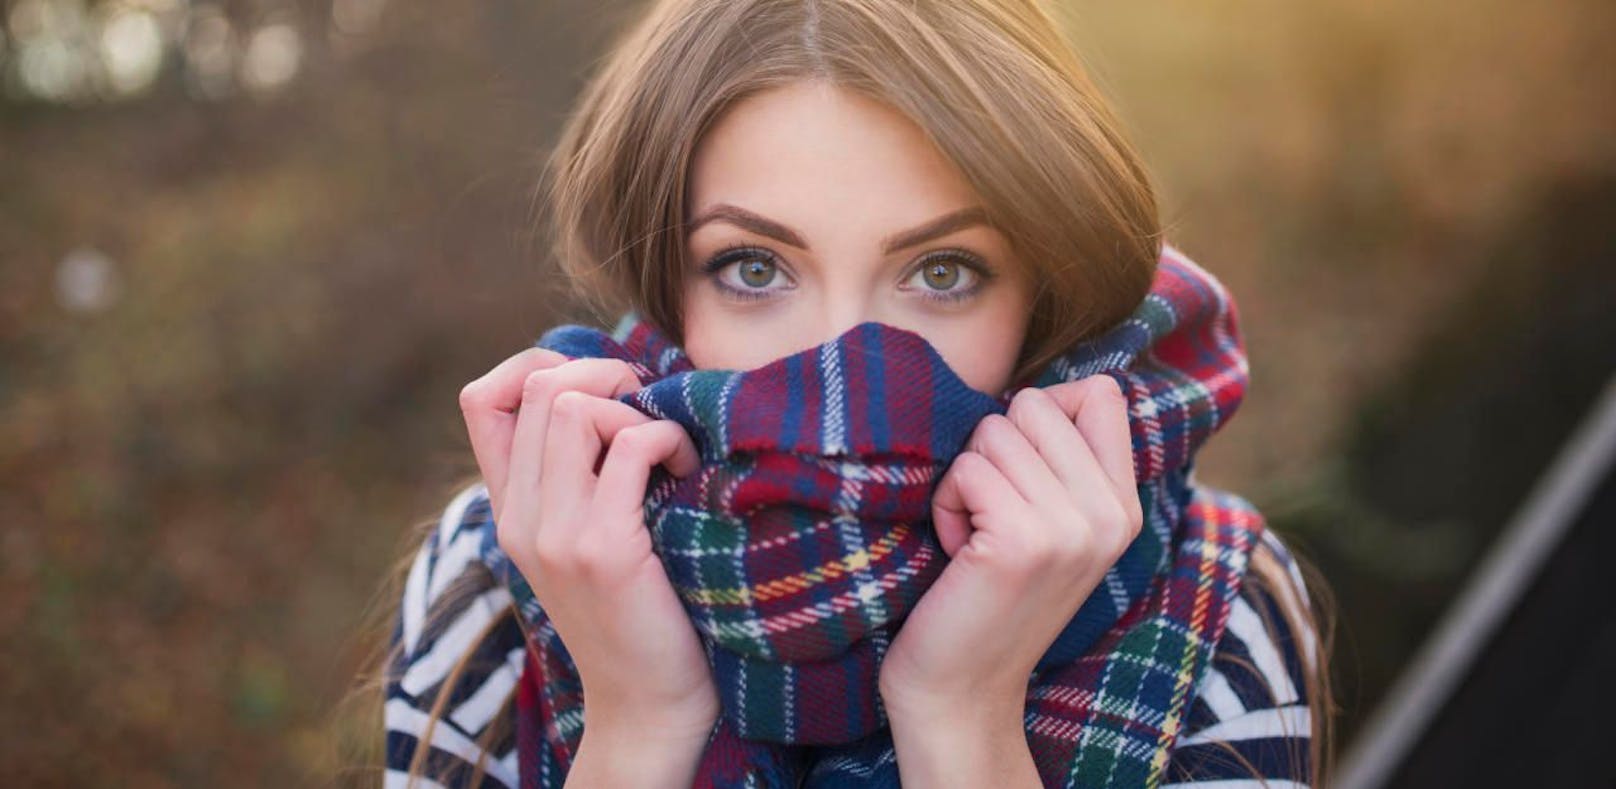 Die Website schal-egal.at bringt jetzt eine App die klären soll, ob es schon kalt genug für einen Schal im Gesicht ist.